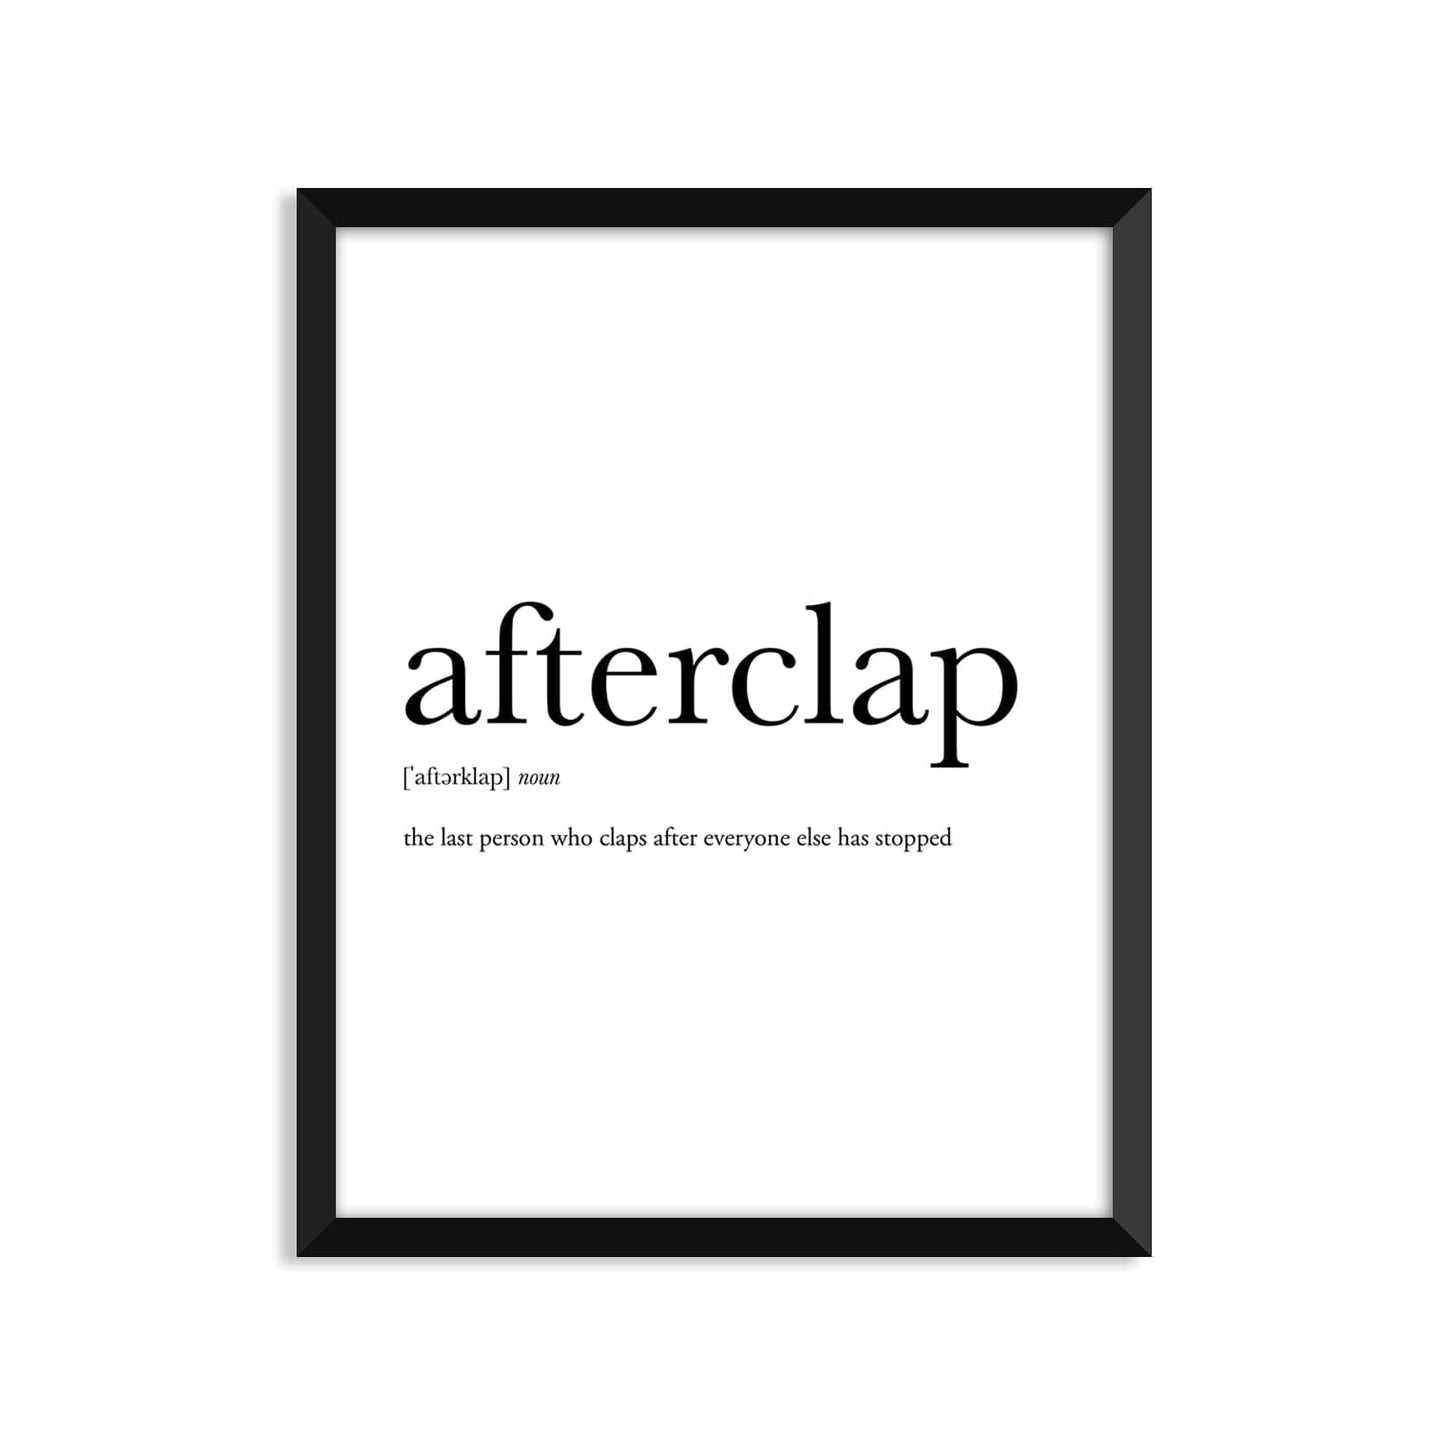 Afterclap